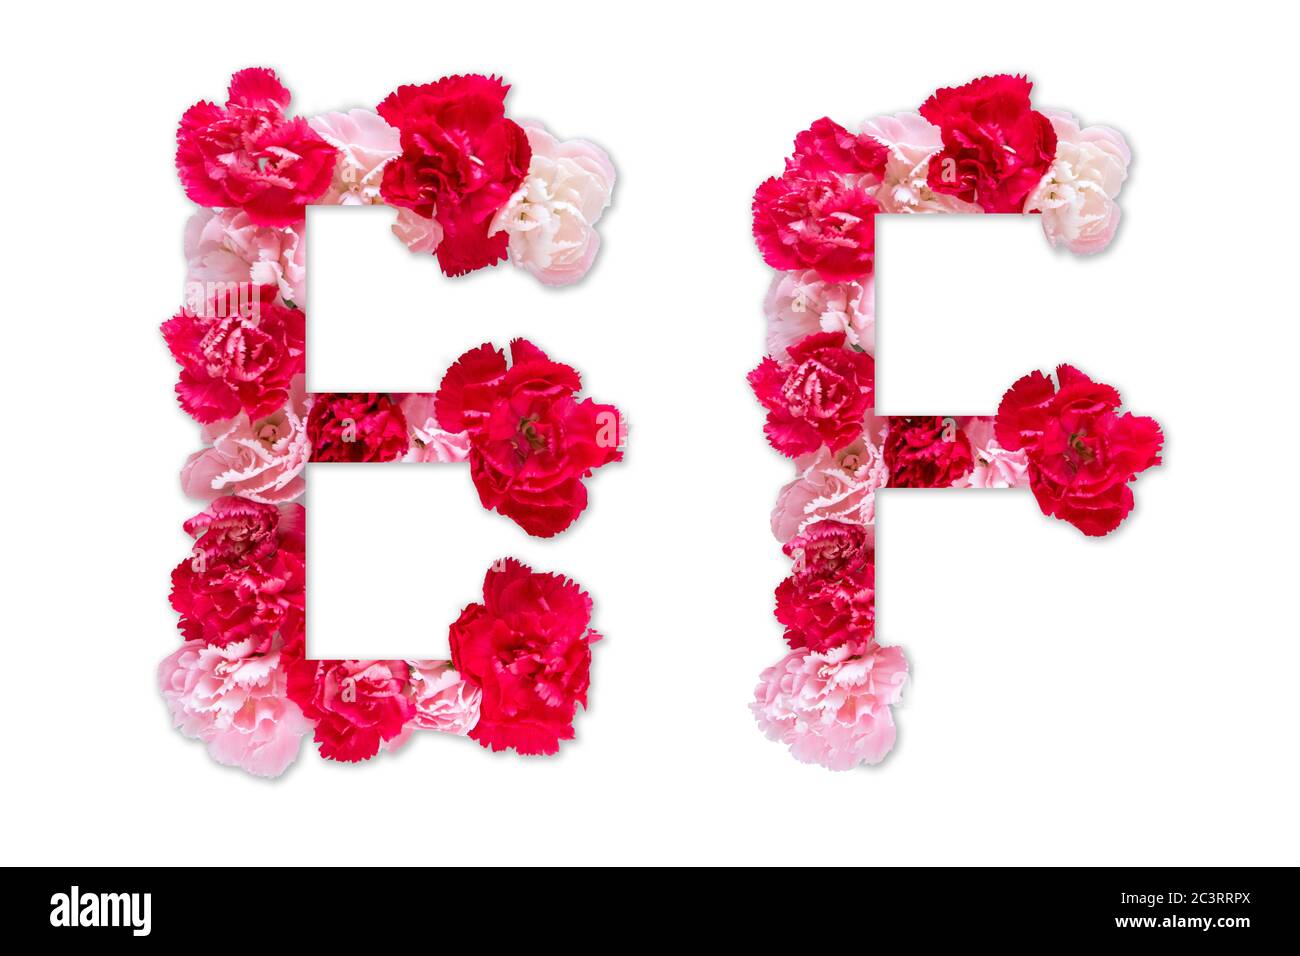 Blumenschrift Alphabet E F Set (Kollektion A-Z), aus echten Nelkenblumen rosa, rote Farbe mit Papier geschnitten Form von Großbuchstaben. Flora Schrift Stockfoto